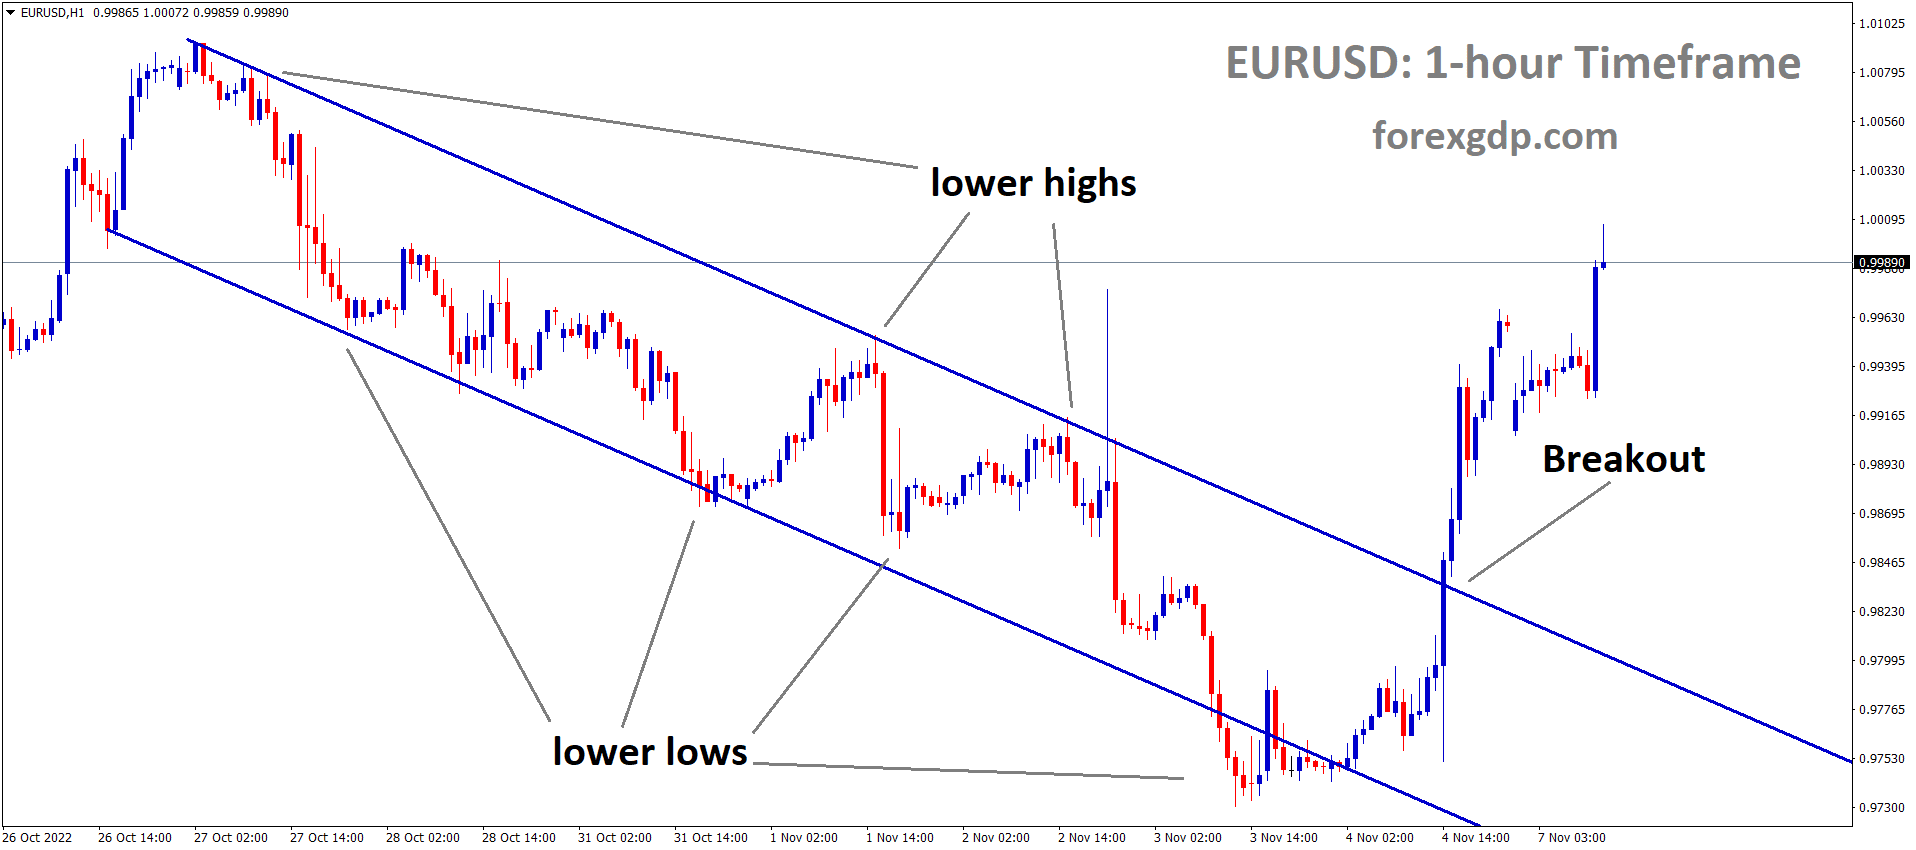 EURUSD has broken the Descending channel in upside